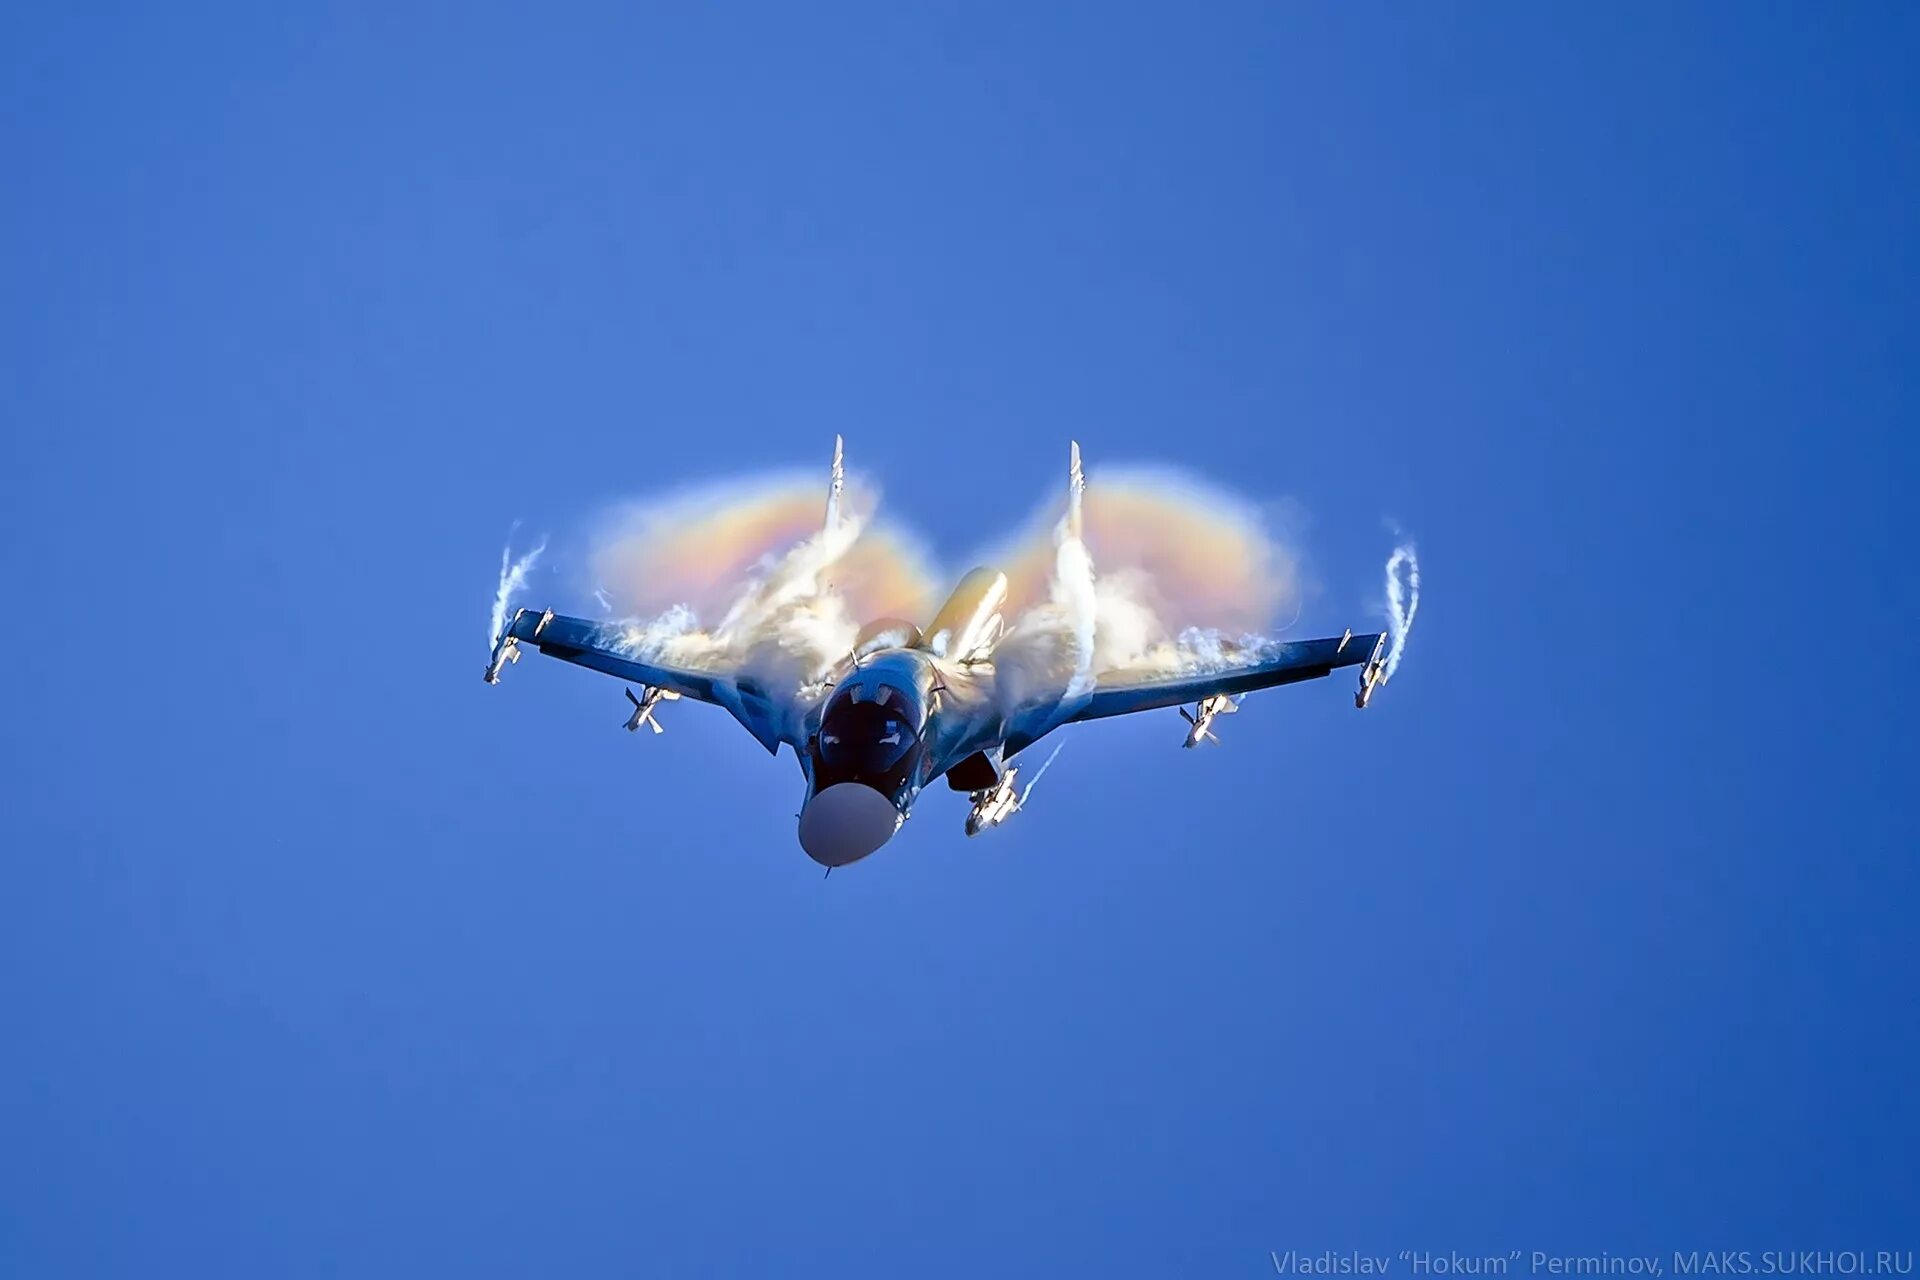 Сегодня летал истребитель. Су-34 утенок. Су 34 эффект Прандтля Глоерта. Су-34 двухдвигательный реактивный самолёт. Су 34 ВКС РФ.